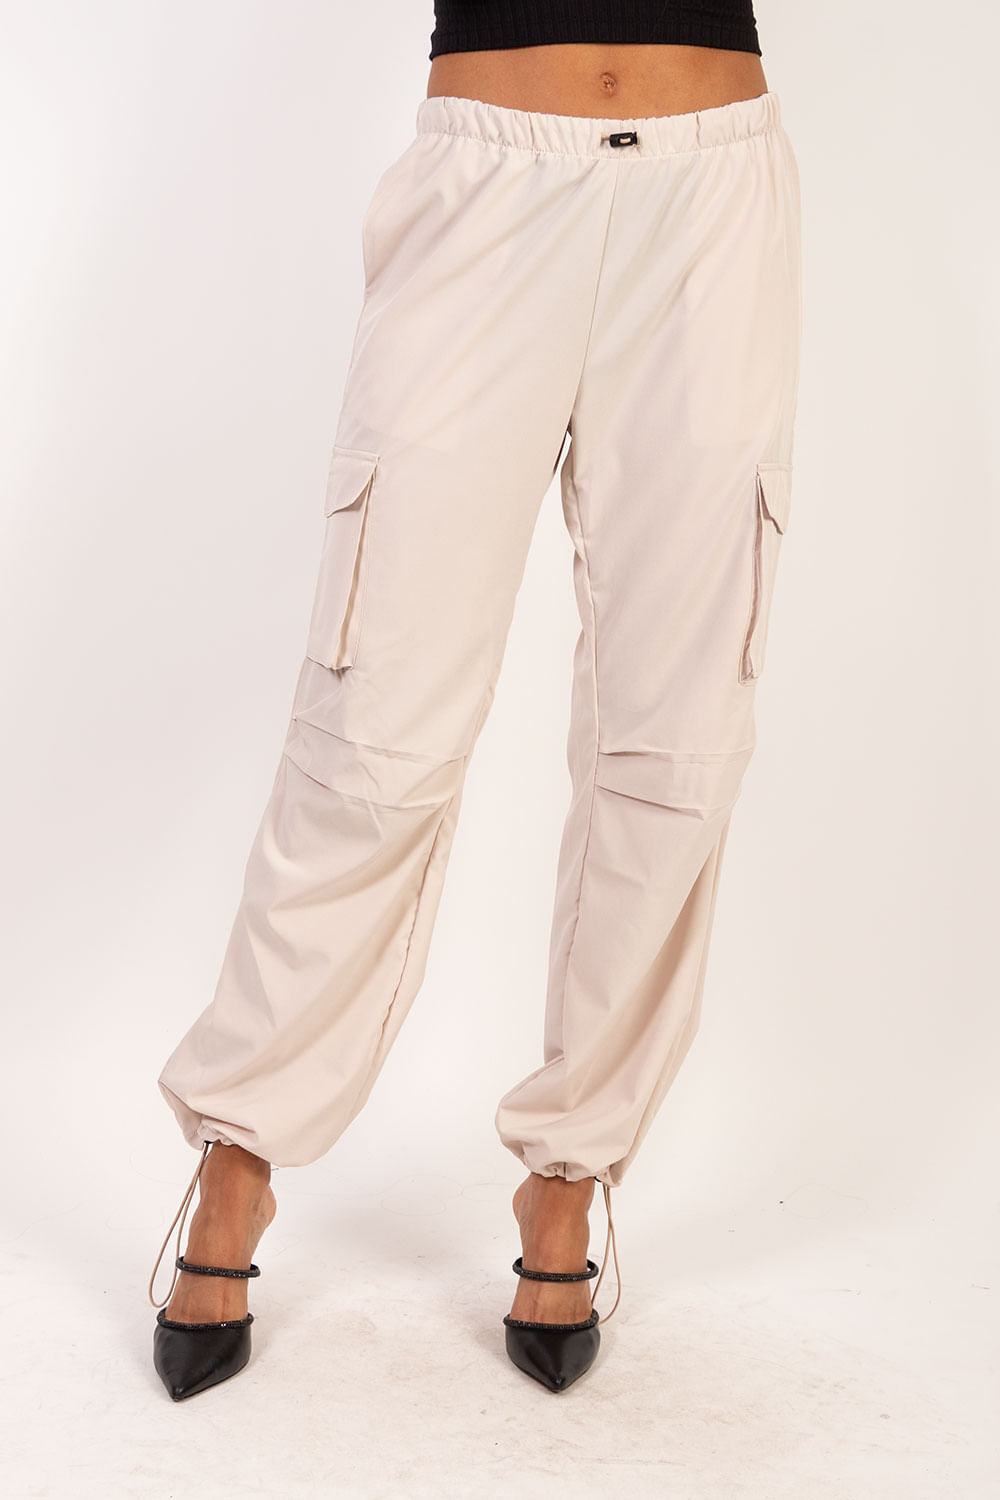 JXMARY Pantalones clásicos con 50% de descuento